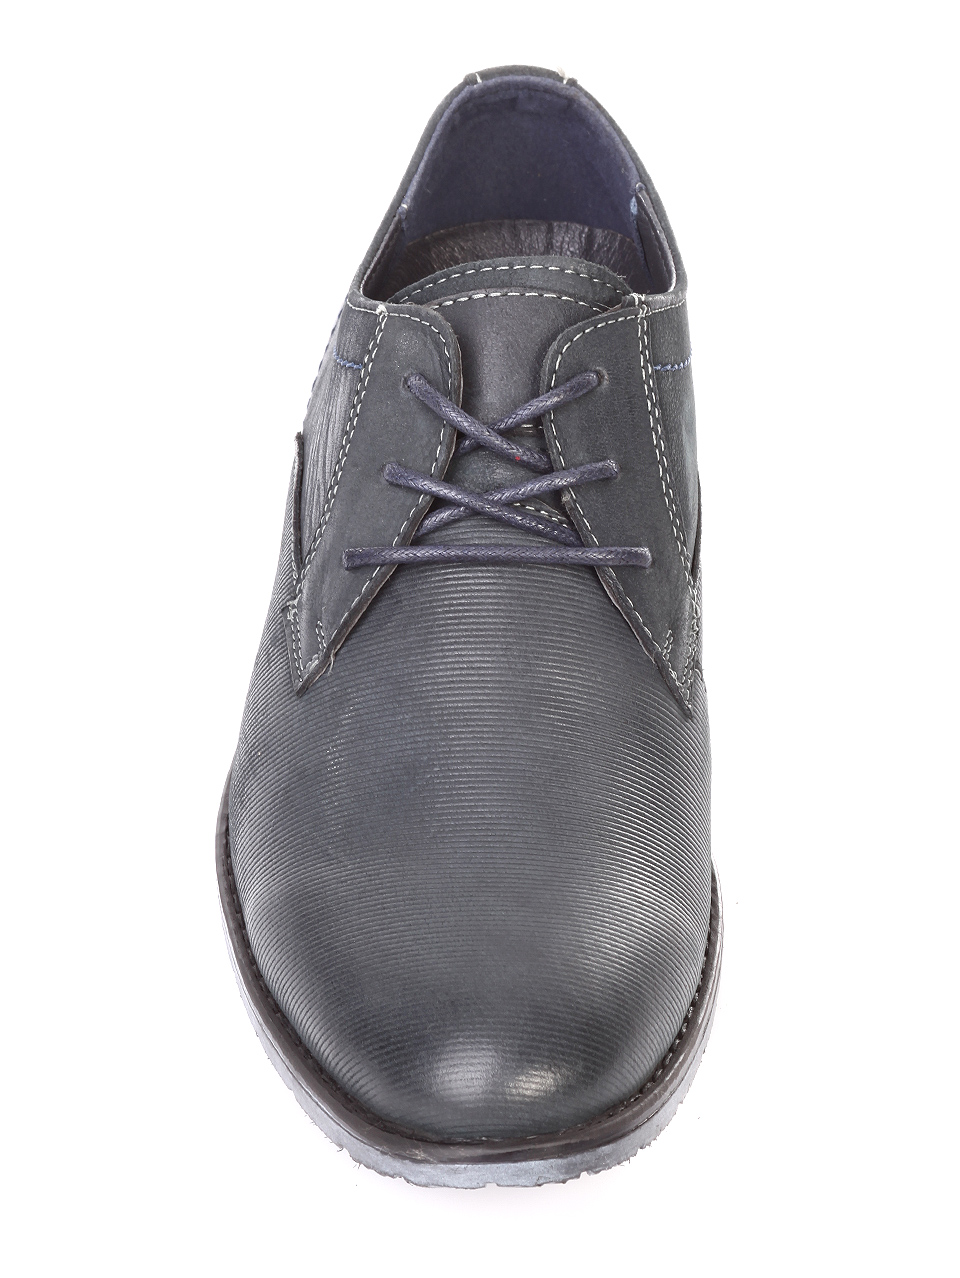 Елегантни мъжки обувки от естествен набук 7N-18728 navy